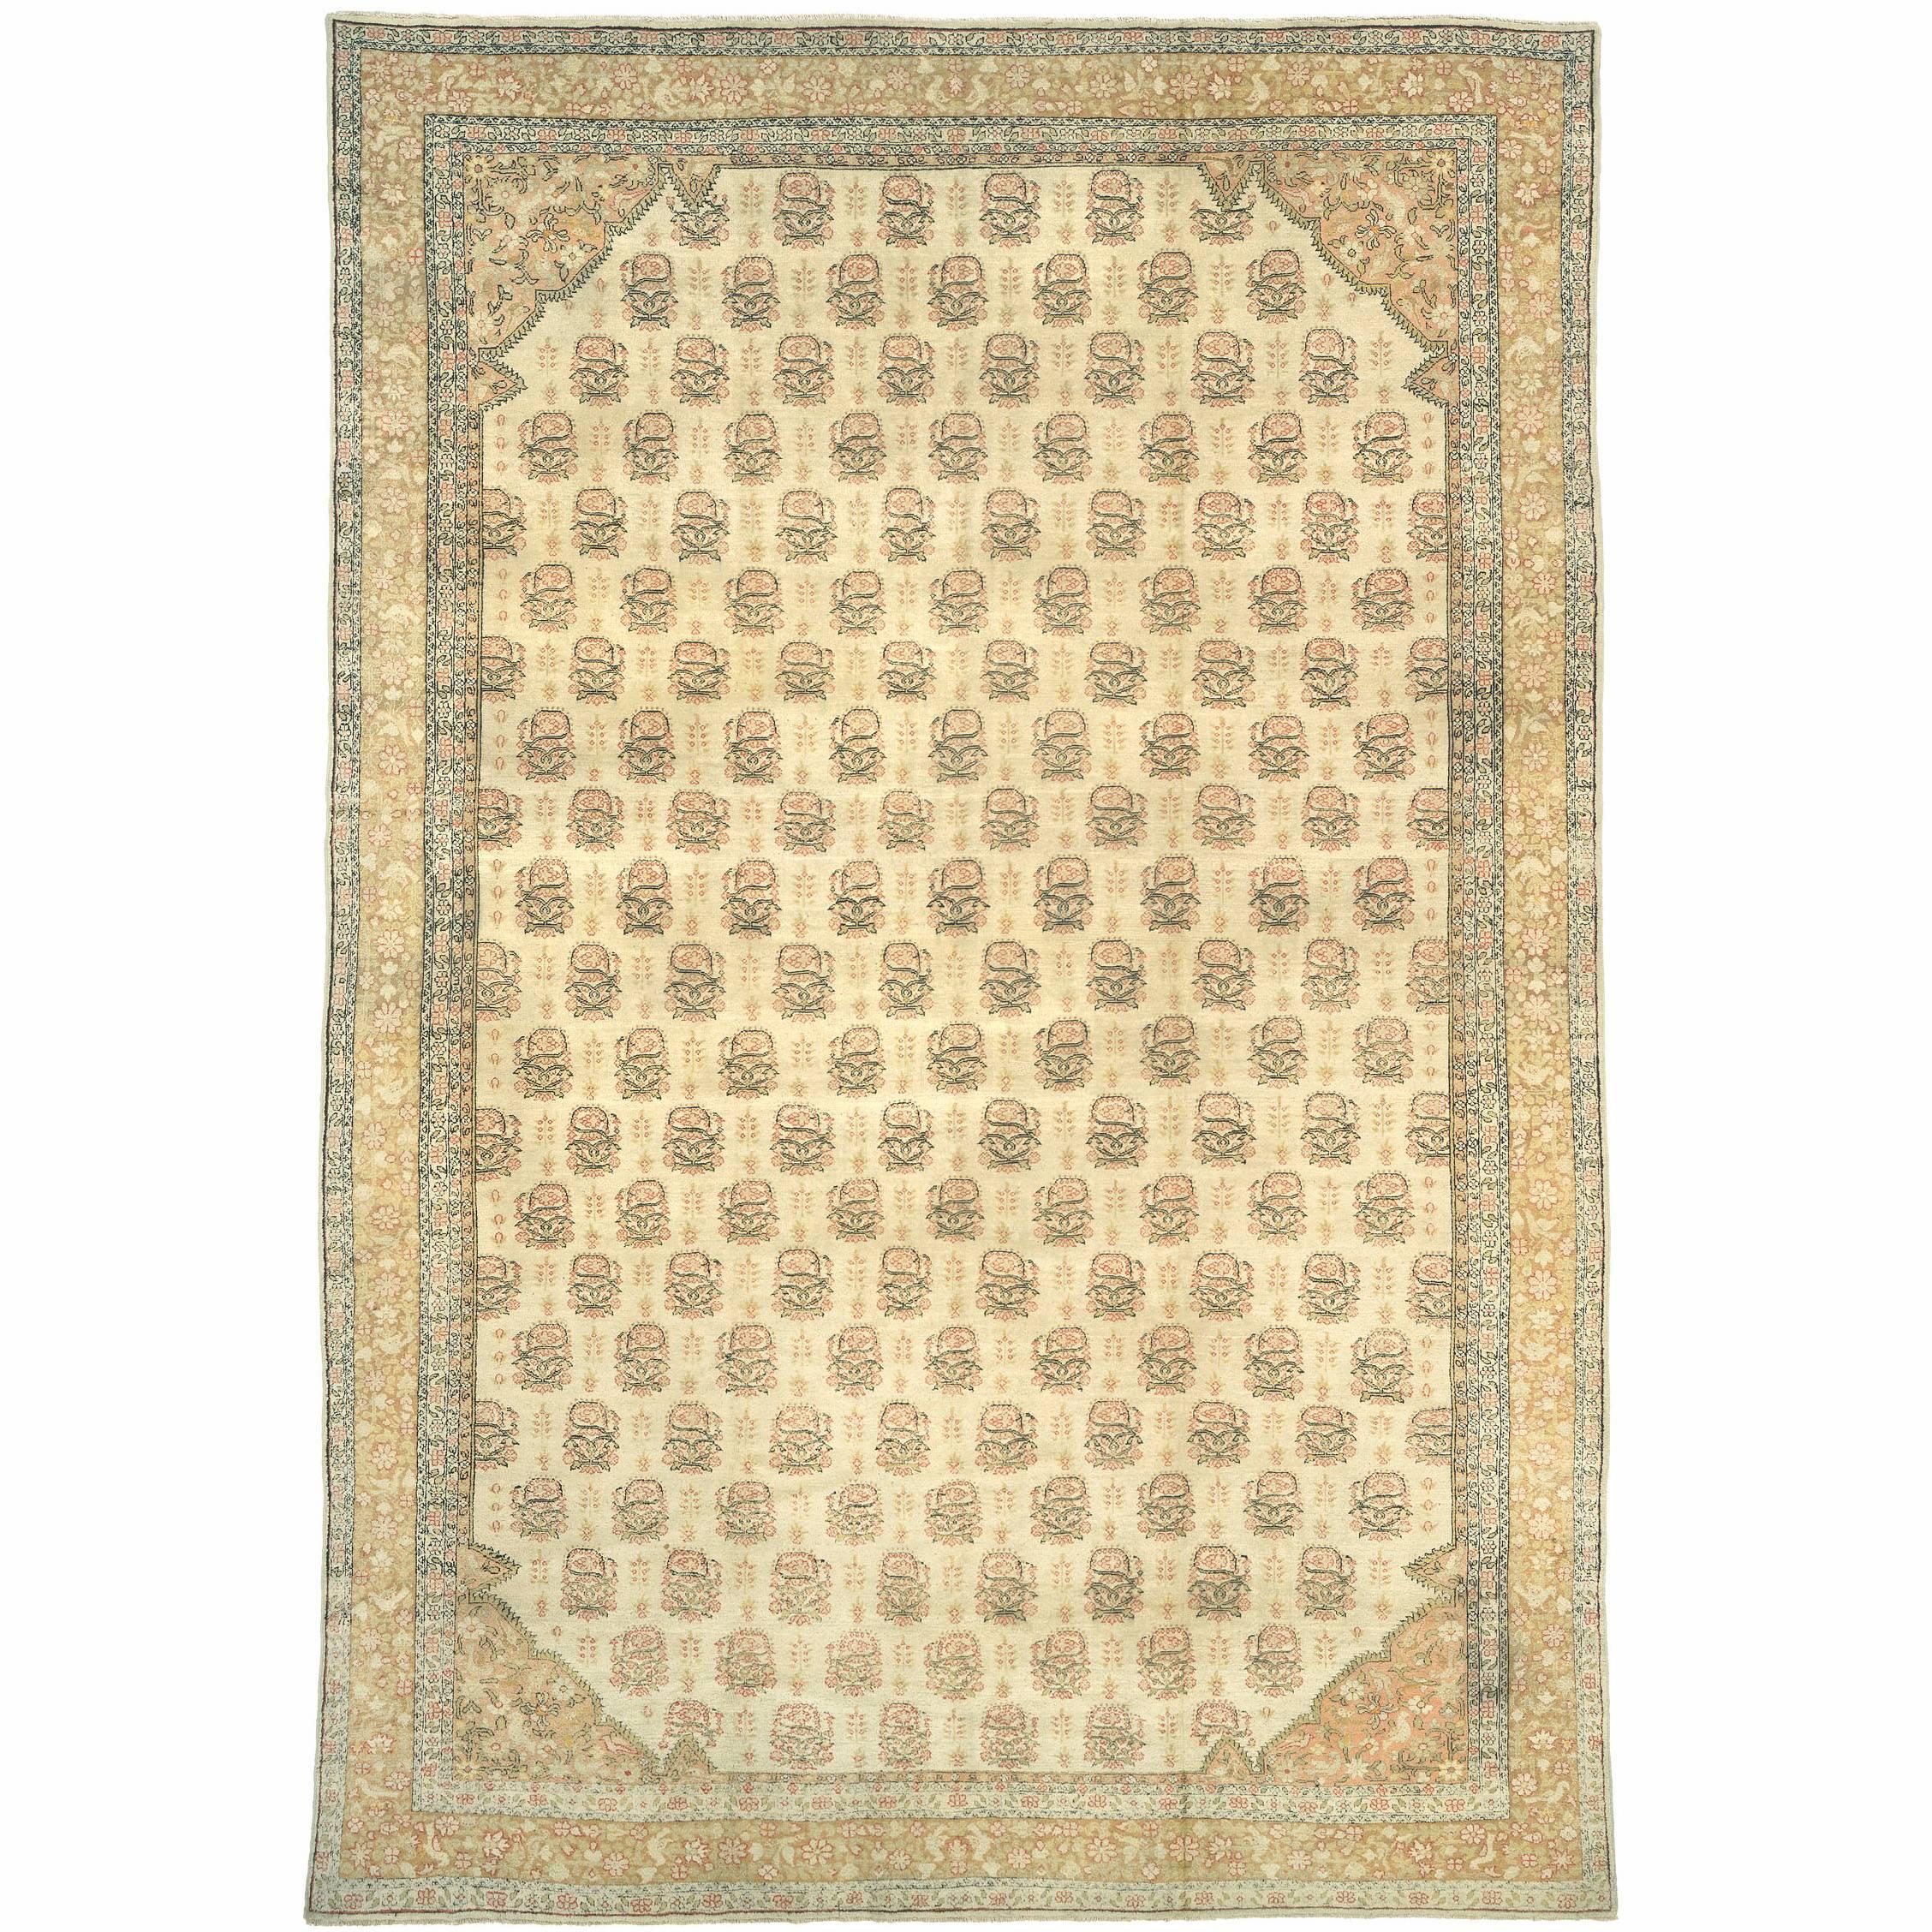 Agra-Teppich aus dem späten 19. Jahrhundert